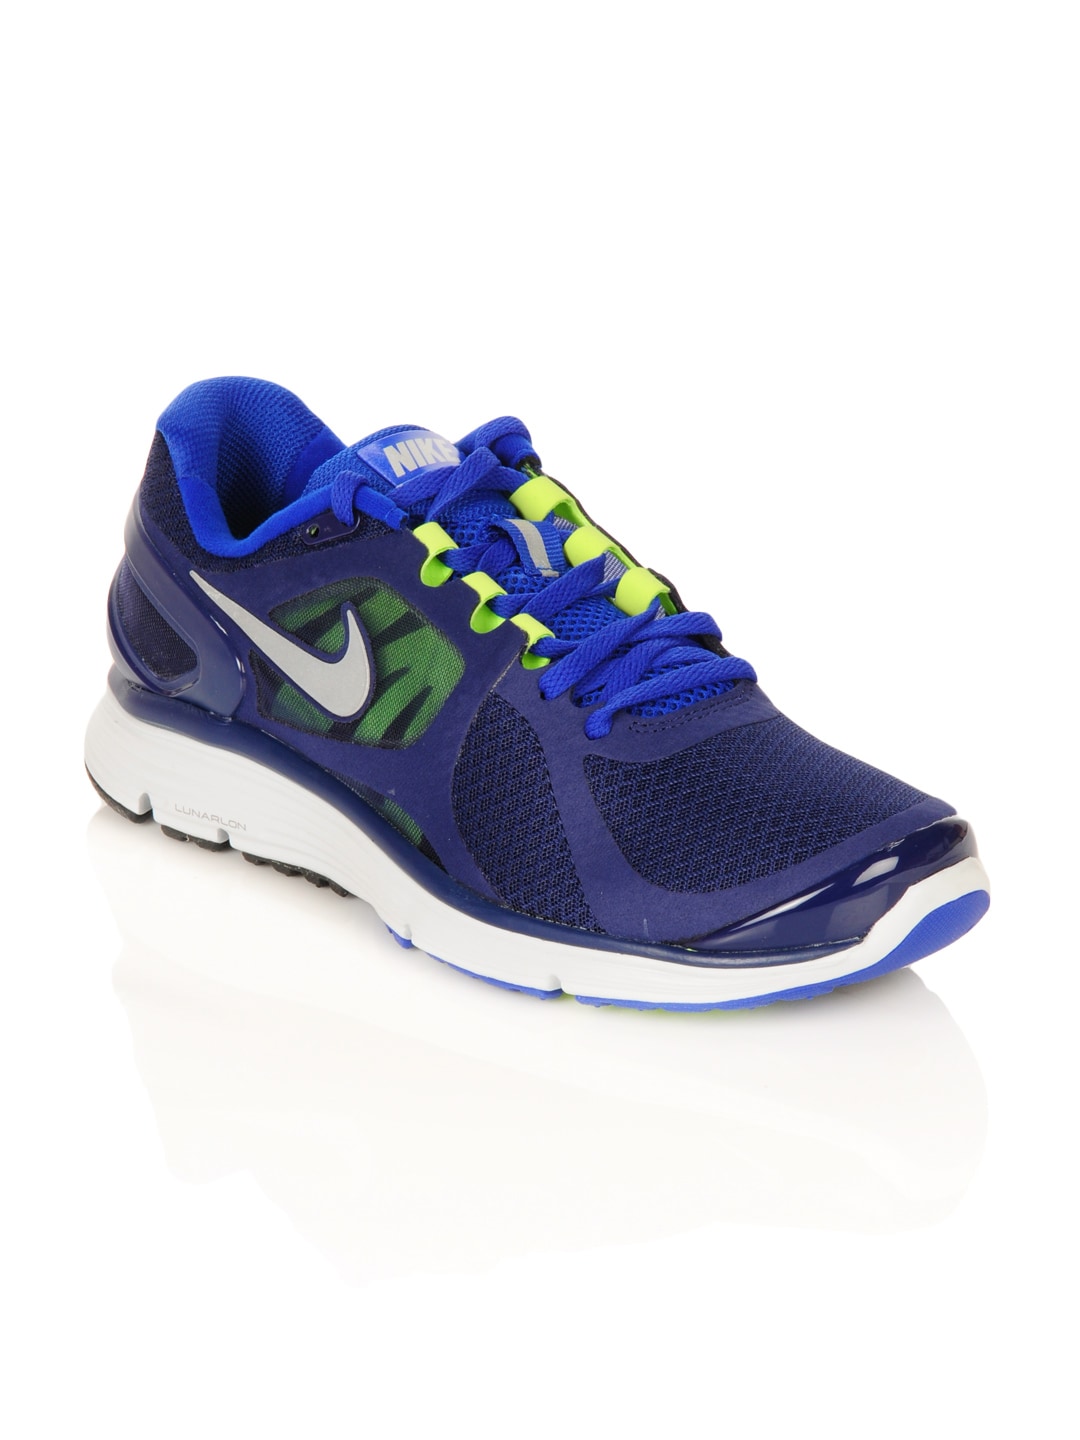 Nike Men Lunareclipse Blue Sports Shoes